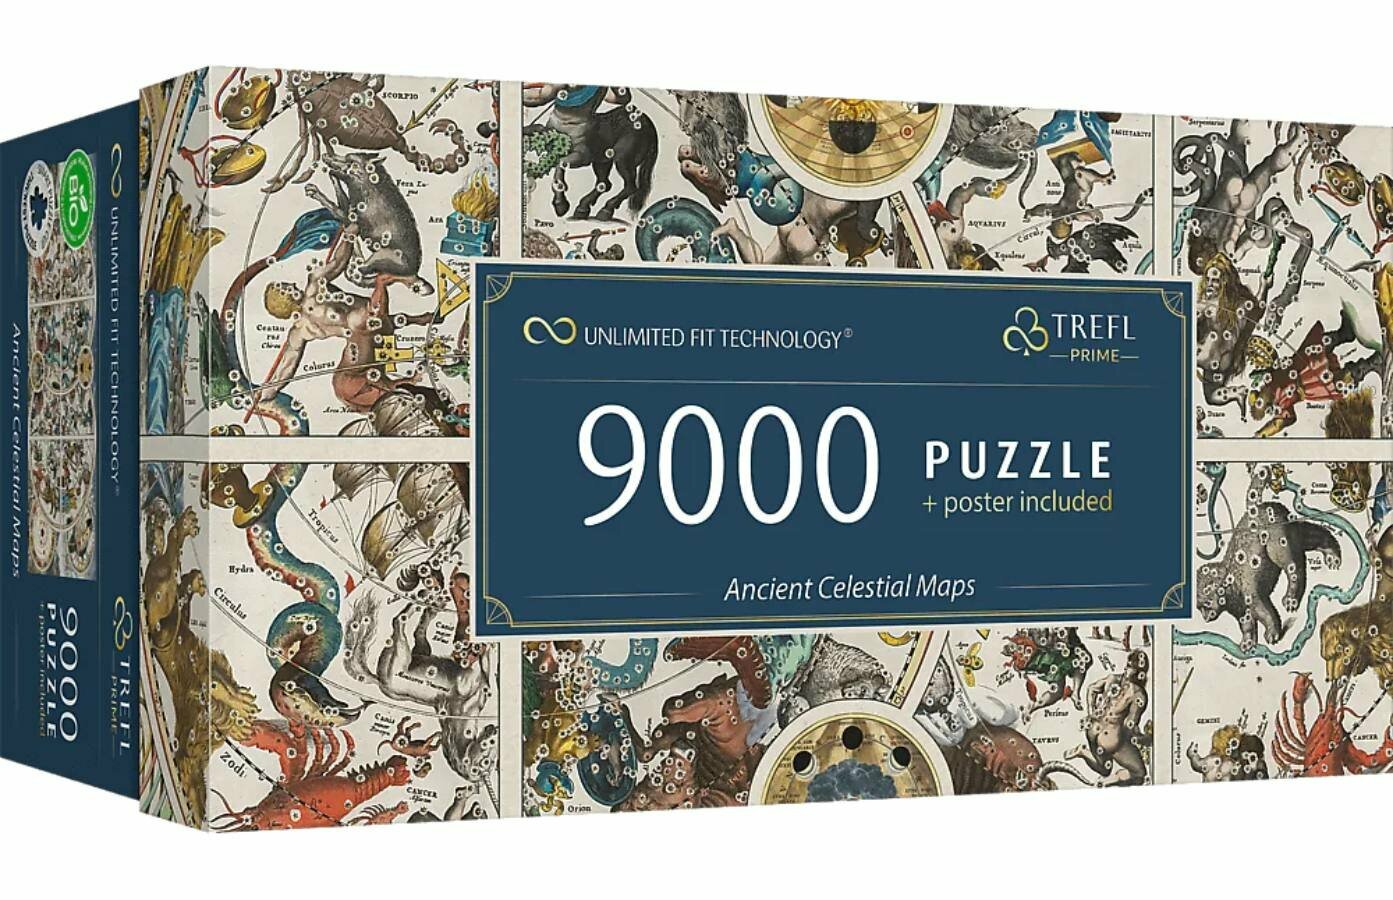 Пазл для взрослых Trefl 9000 деталей: Древние небесные карты (Trefl Prime UFT)